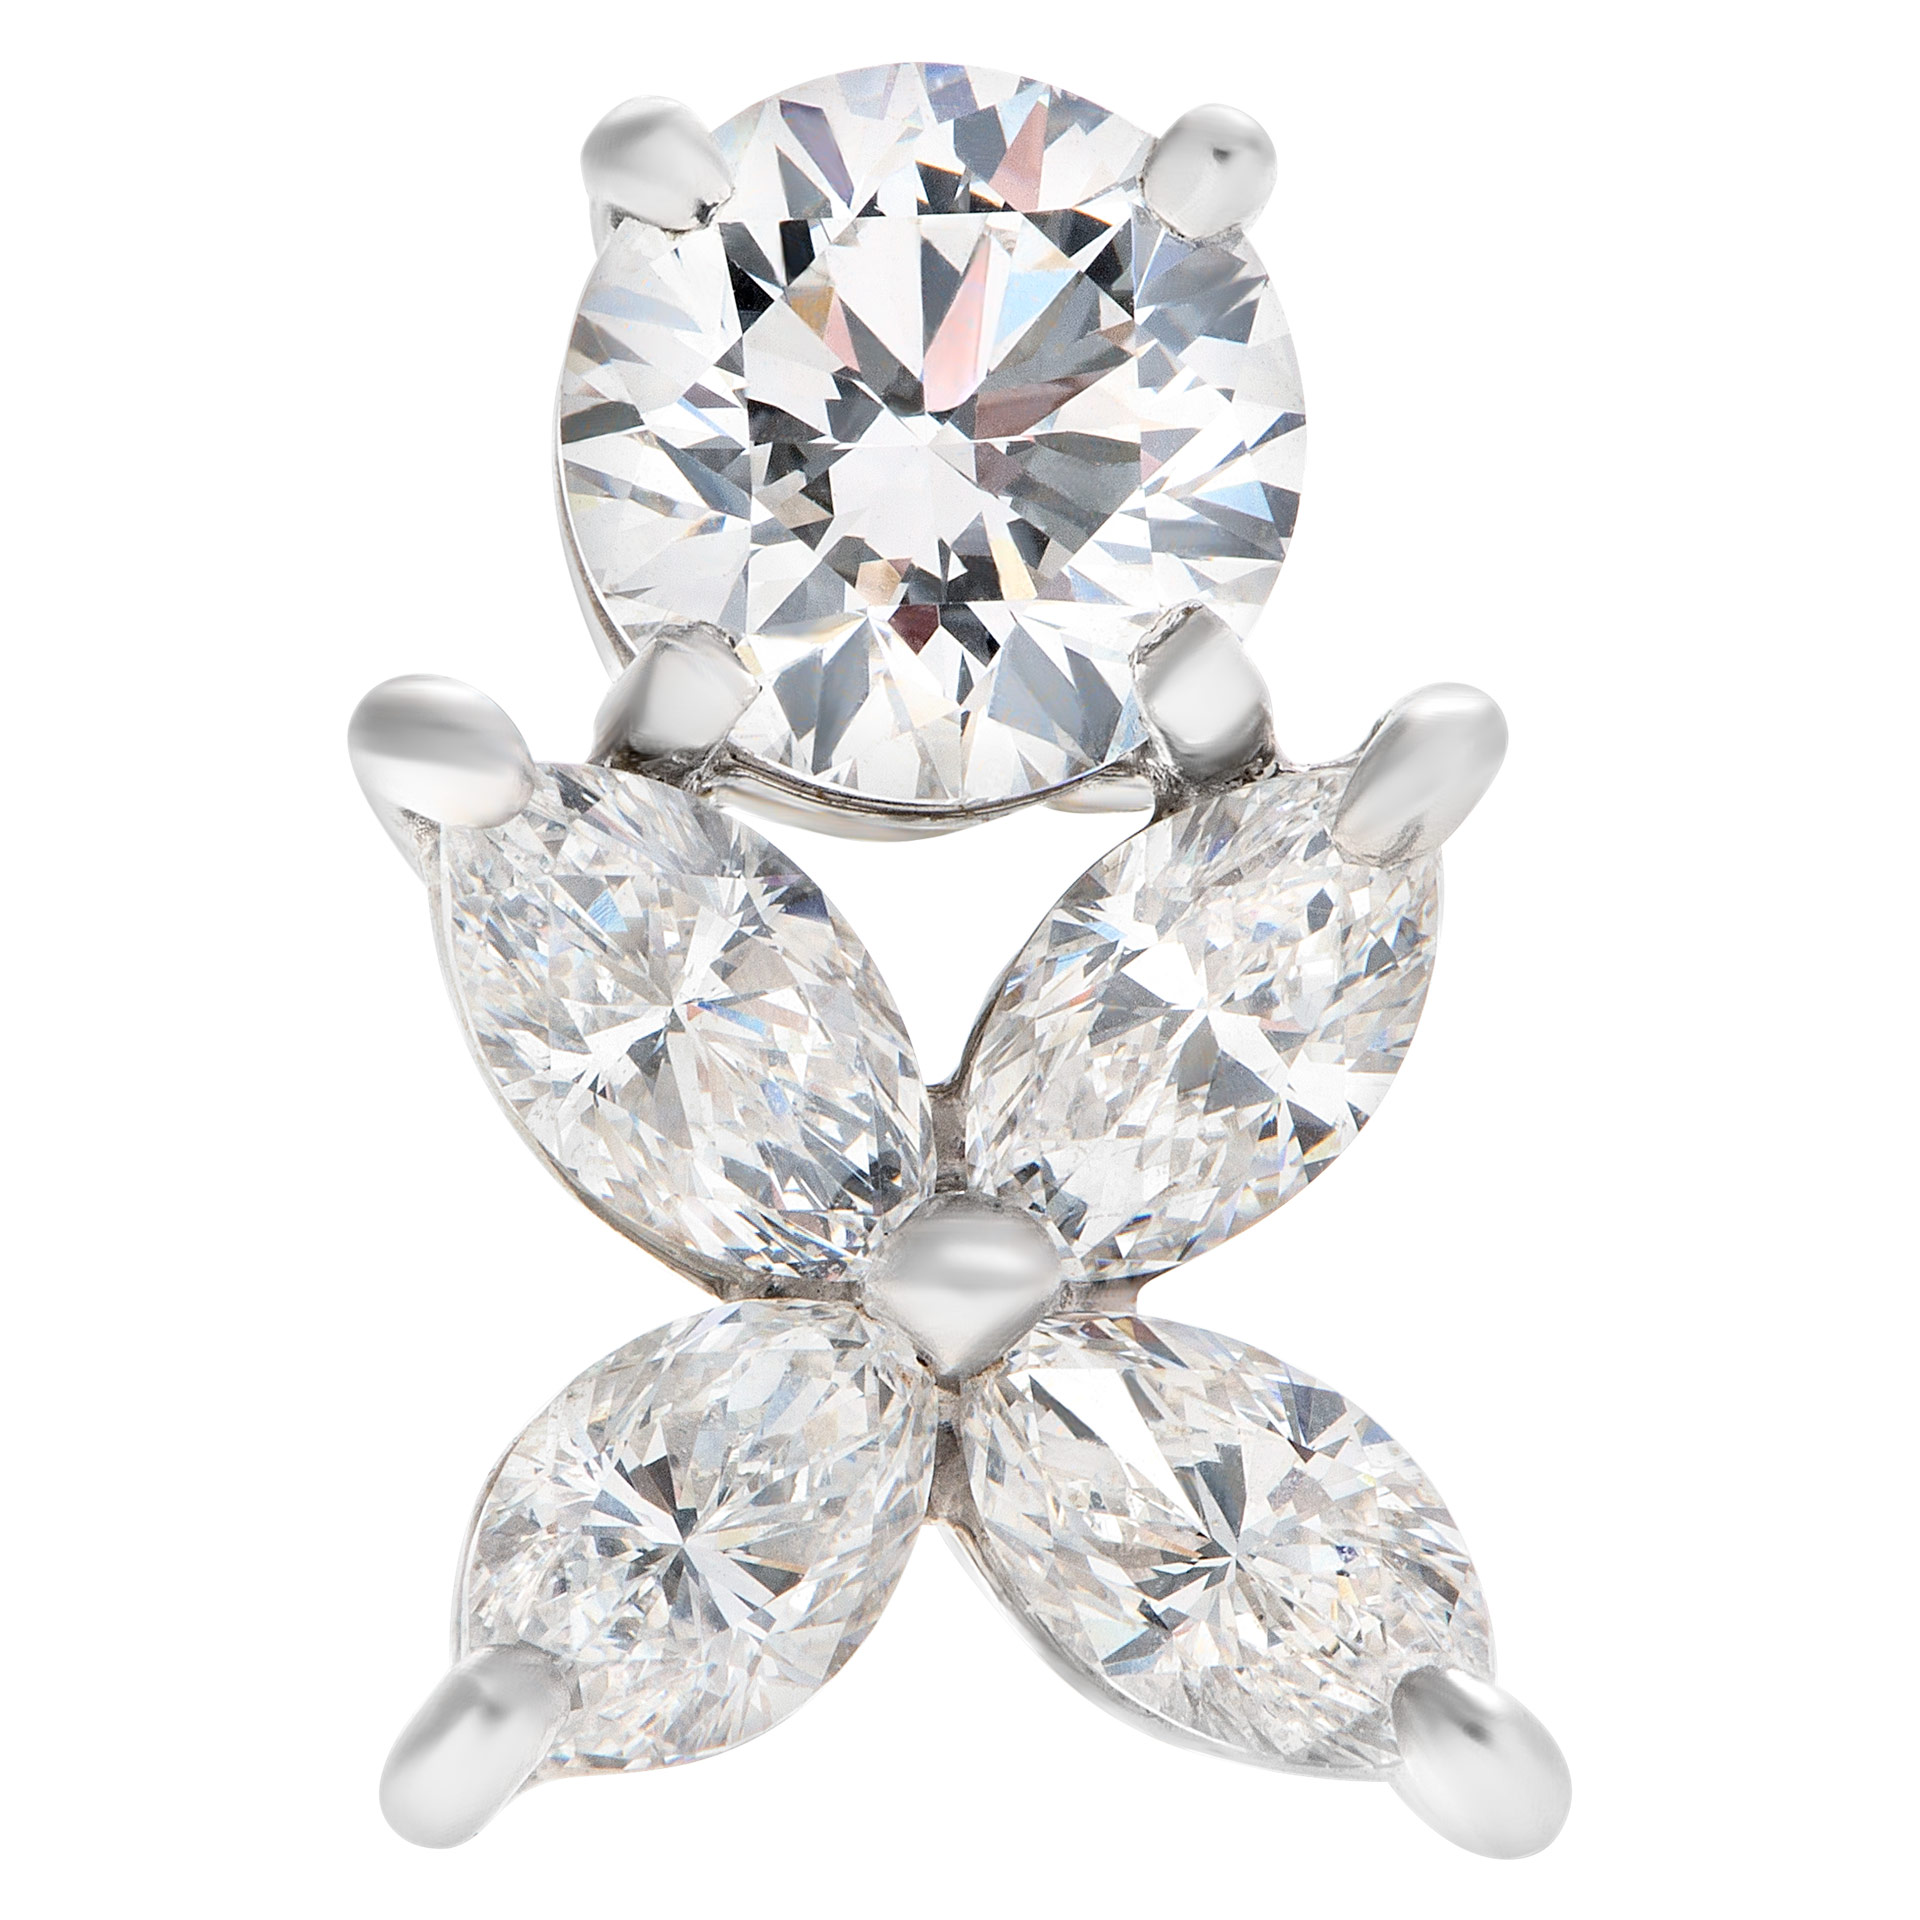 Tiffany  Co diamond studs earrings 1 carat